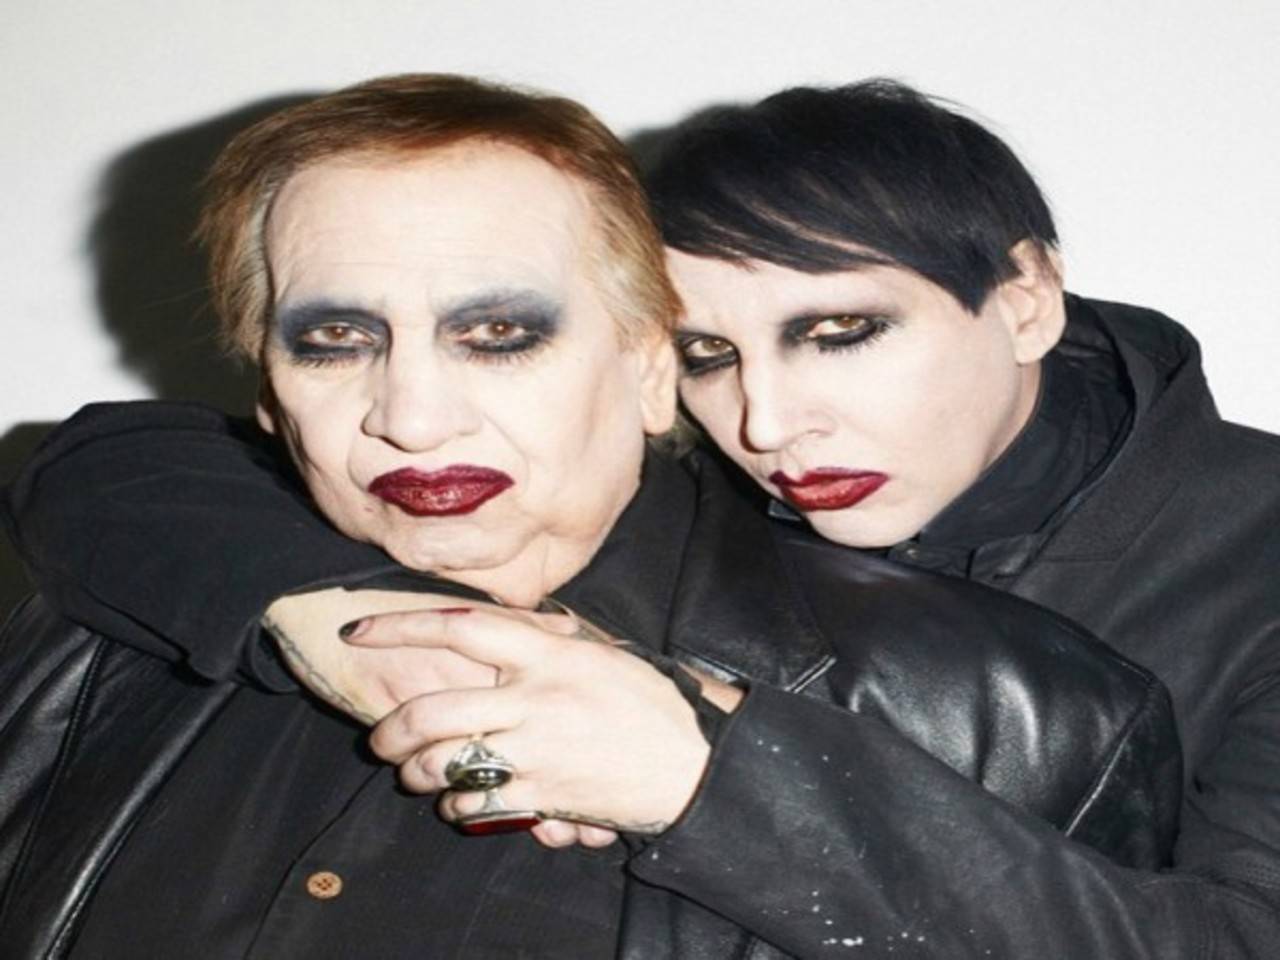 See Marilyn Manson's dad as Marilyn Manson